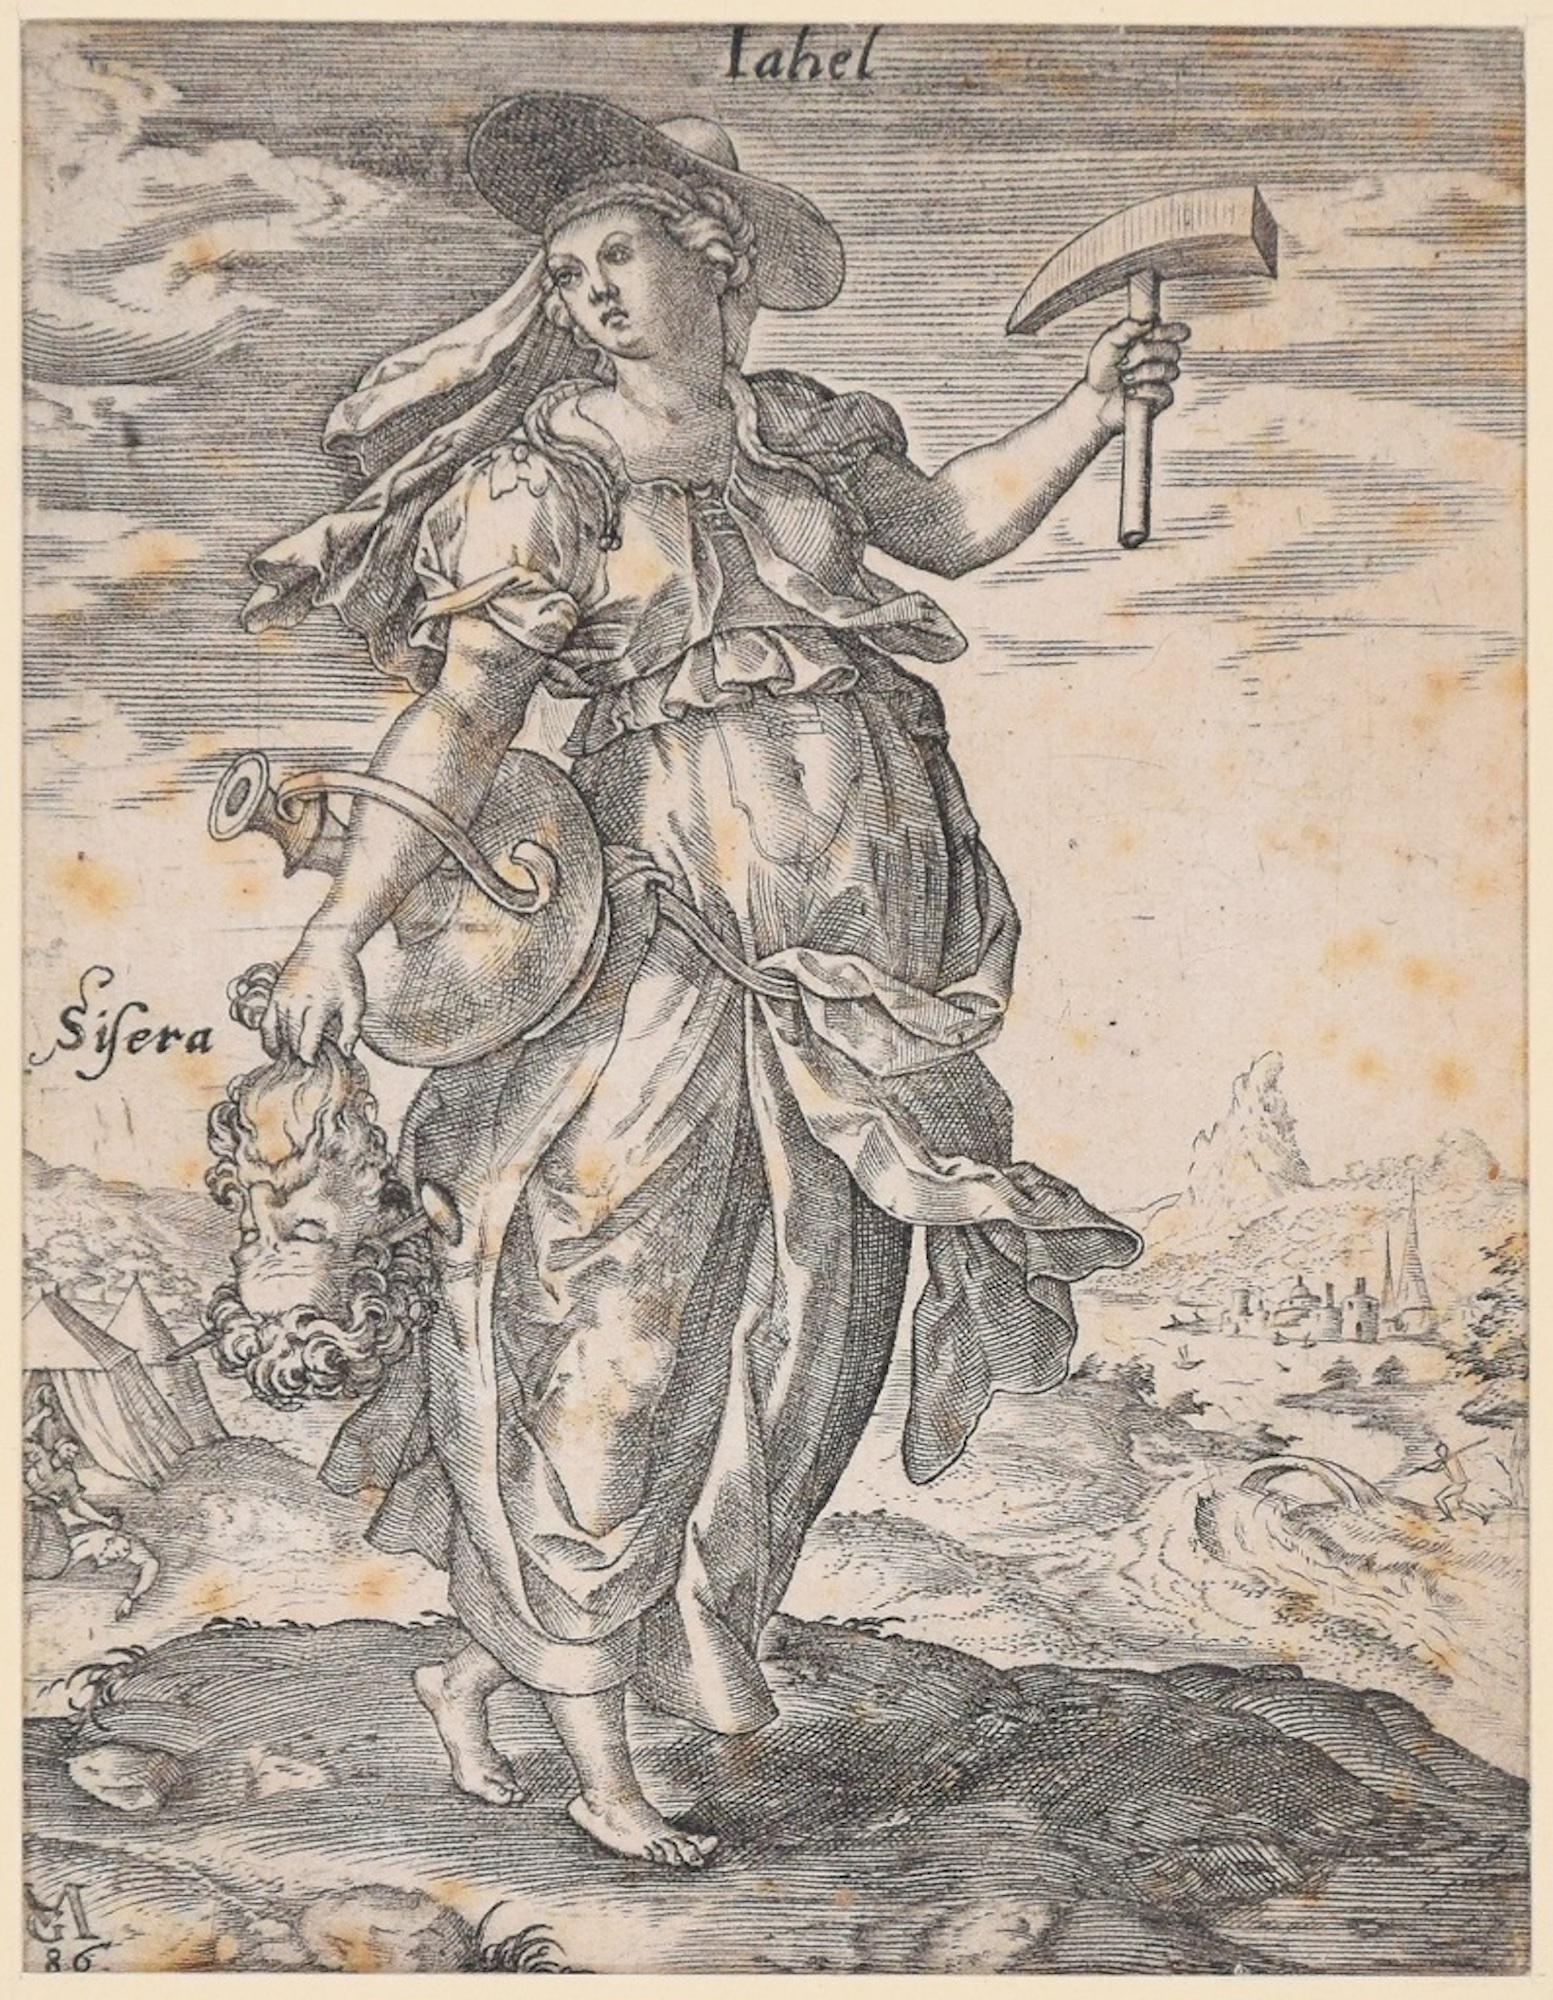 Figurative Print Matthaeus Greuter - Jale avec la tête de Sisera - Gravure originale de M. Greuter